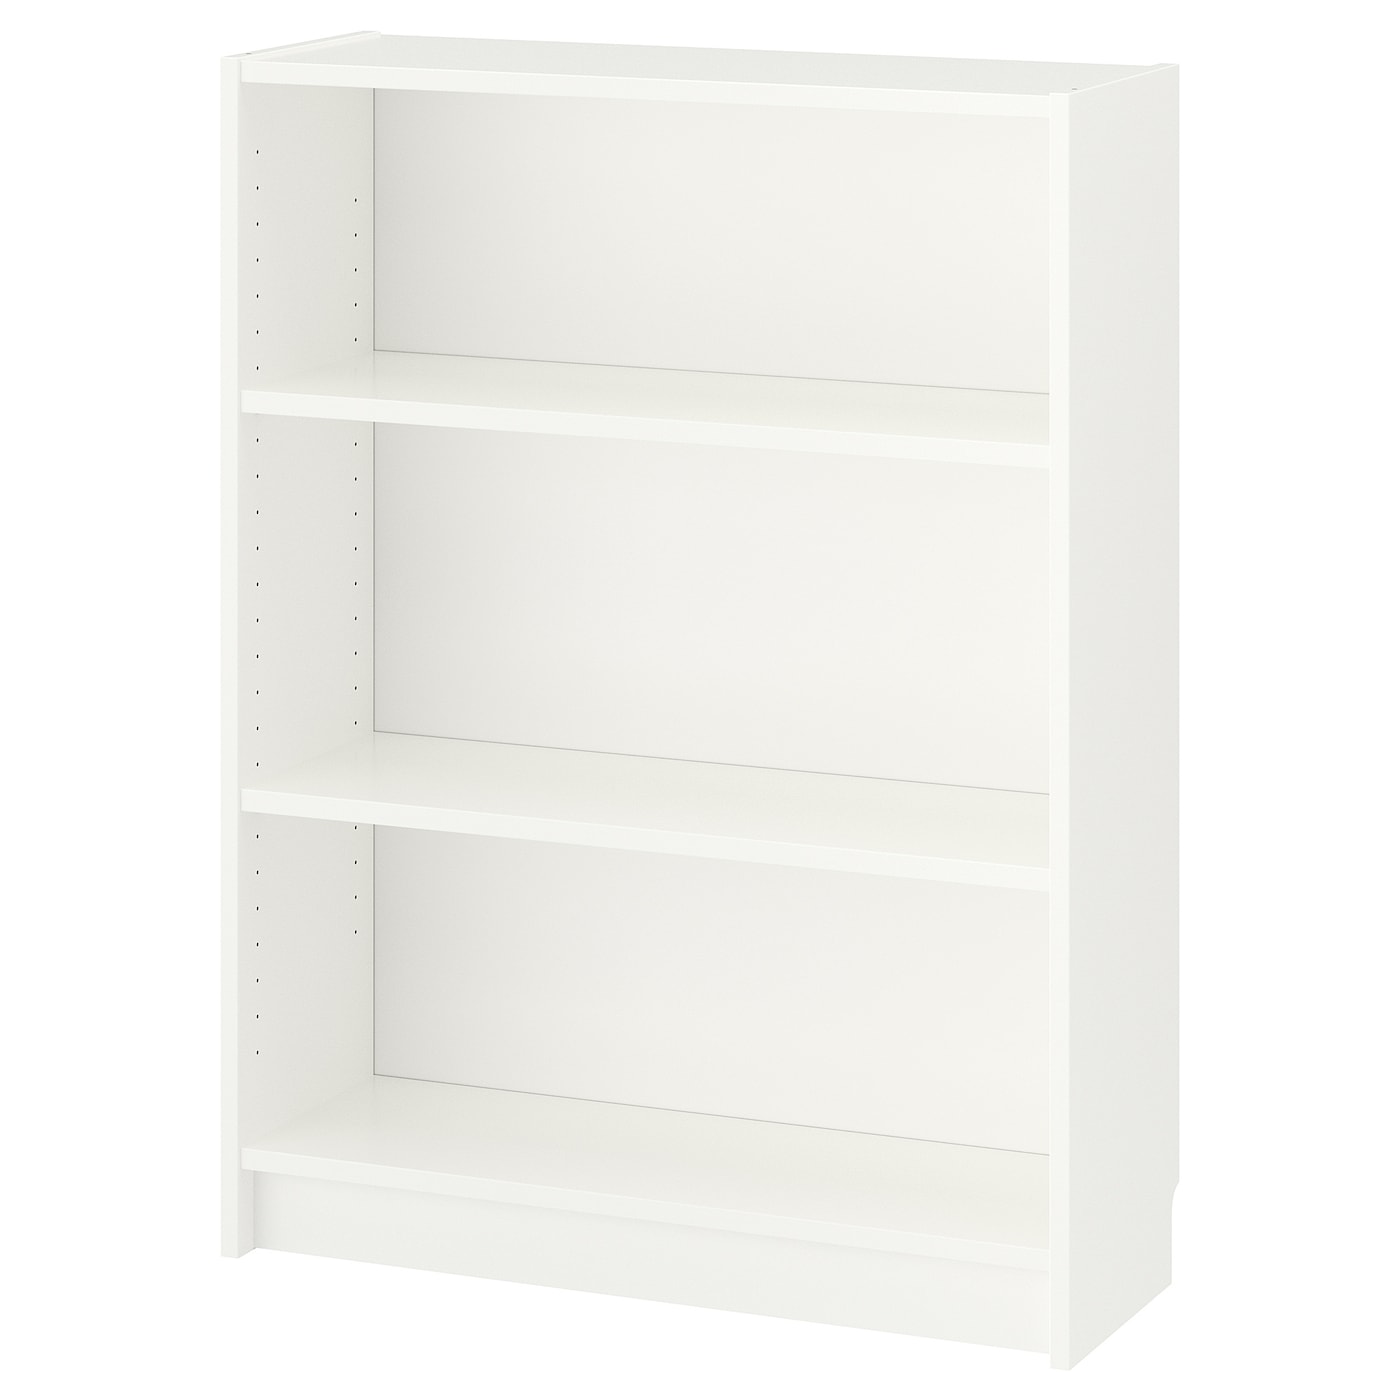 Открытый книжный шкаф - BILLY IKEA/БИЛЛИ ИКЕА, 28х80х106 см, белый